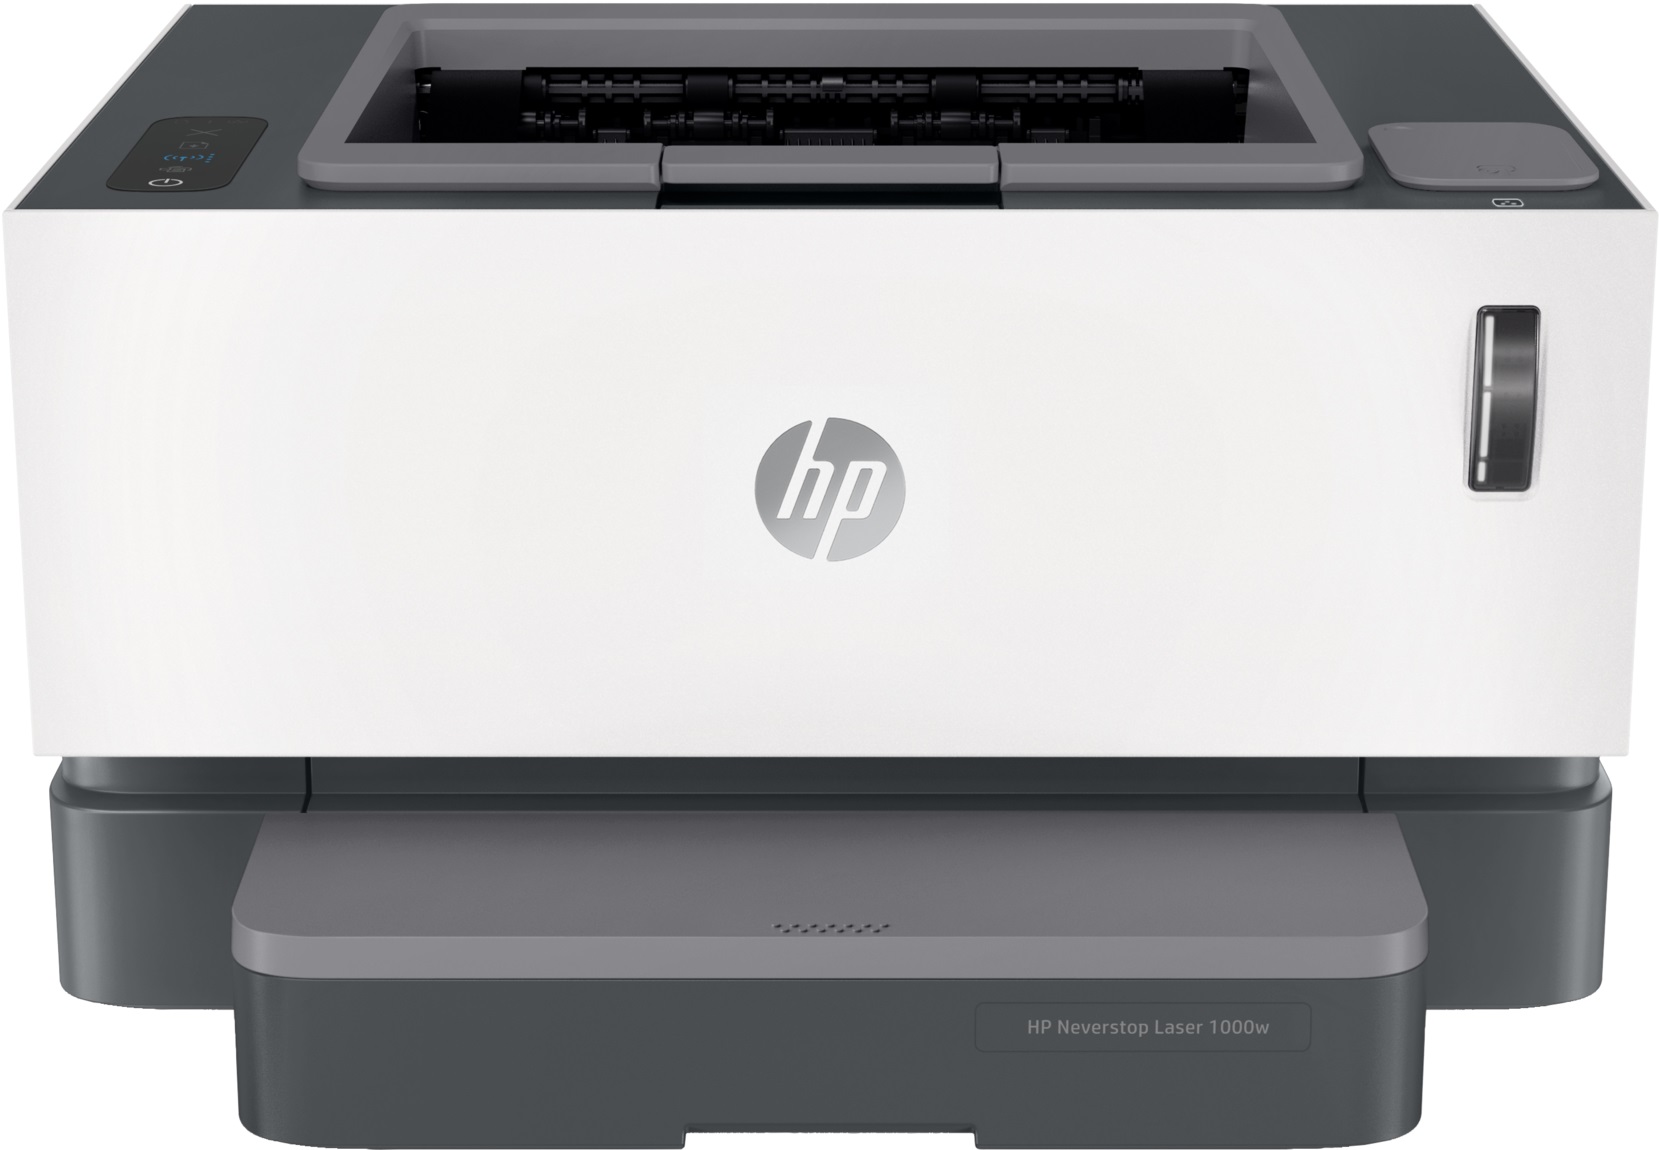 Máy in HP Neverstop Laser 1000w Wifi (4RY23A)